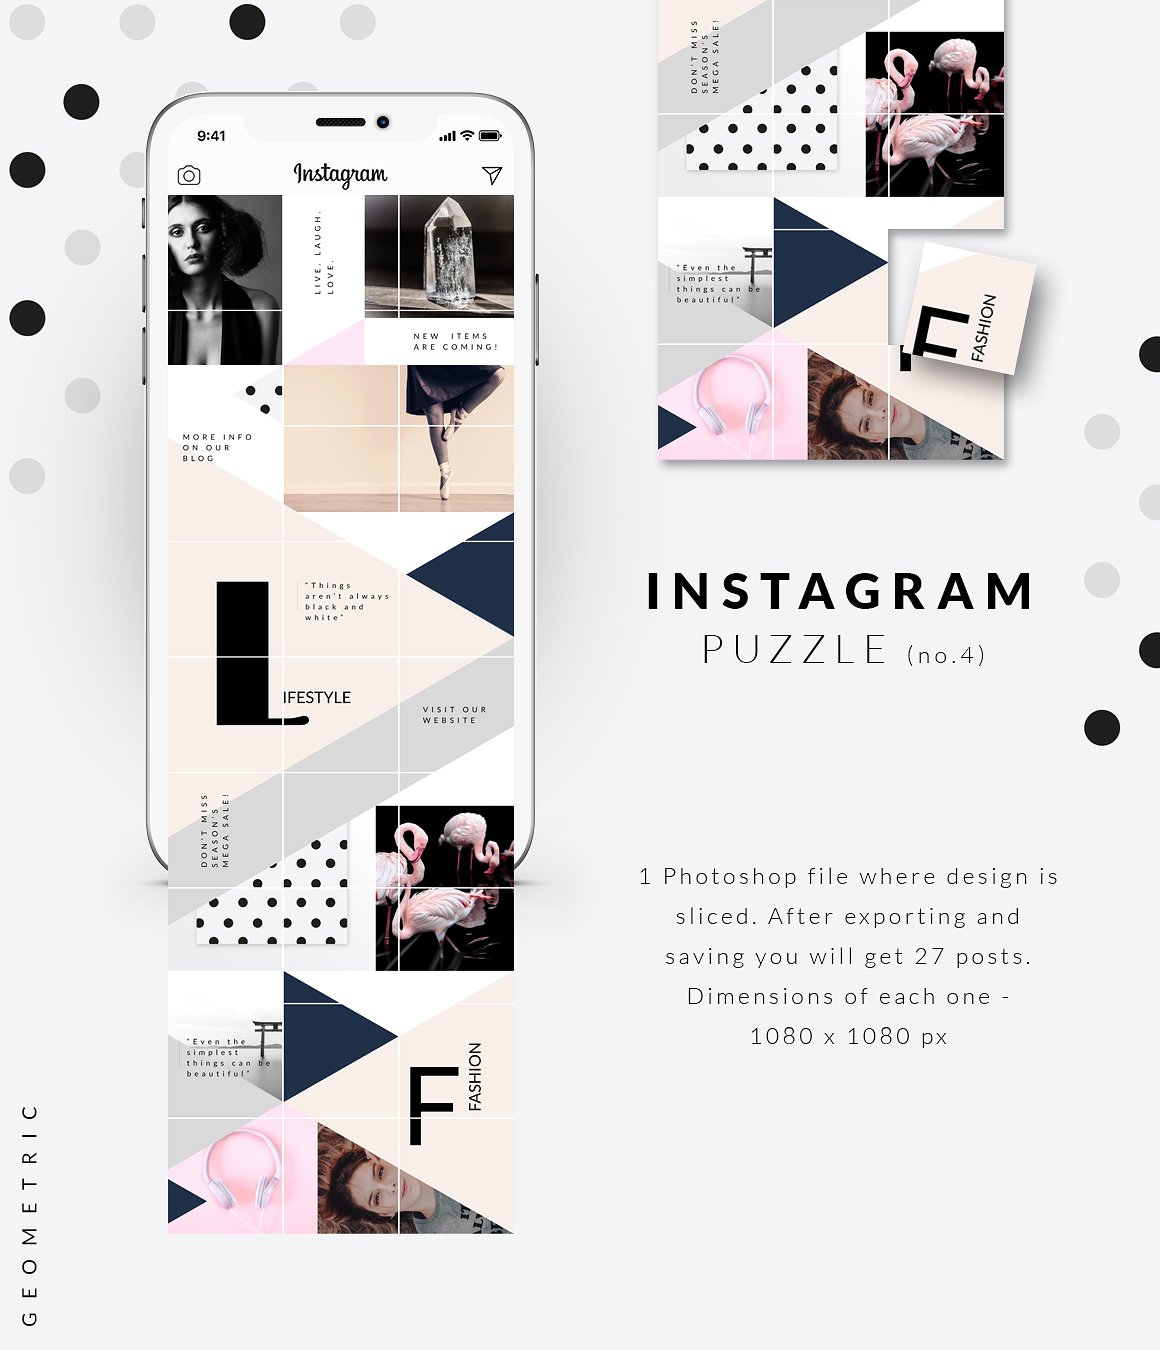 时尚高端几何形状布局的Instagram模板非凡图库精选 Instagram PUZZLE template -Geometric [psd]插图(4)